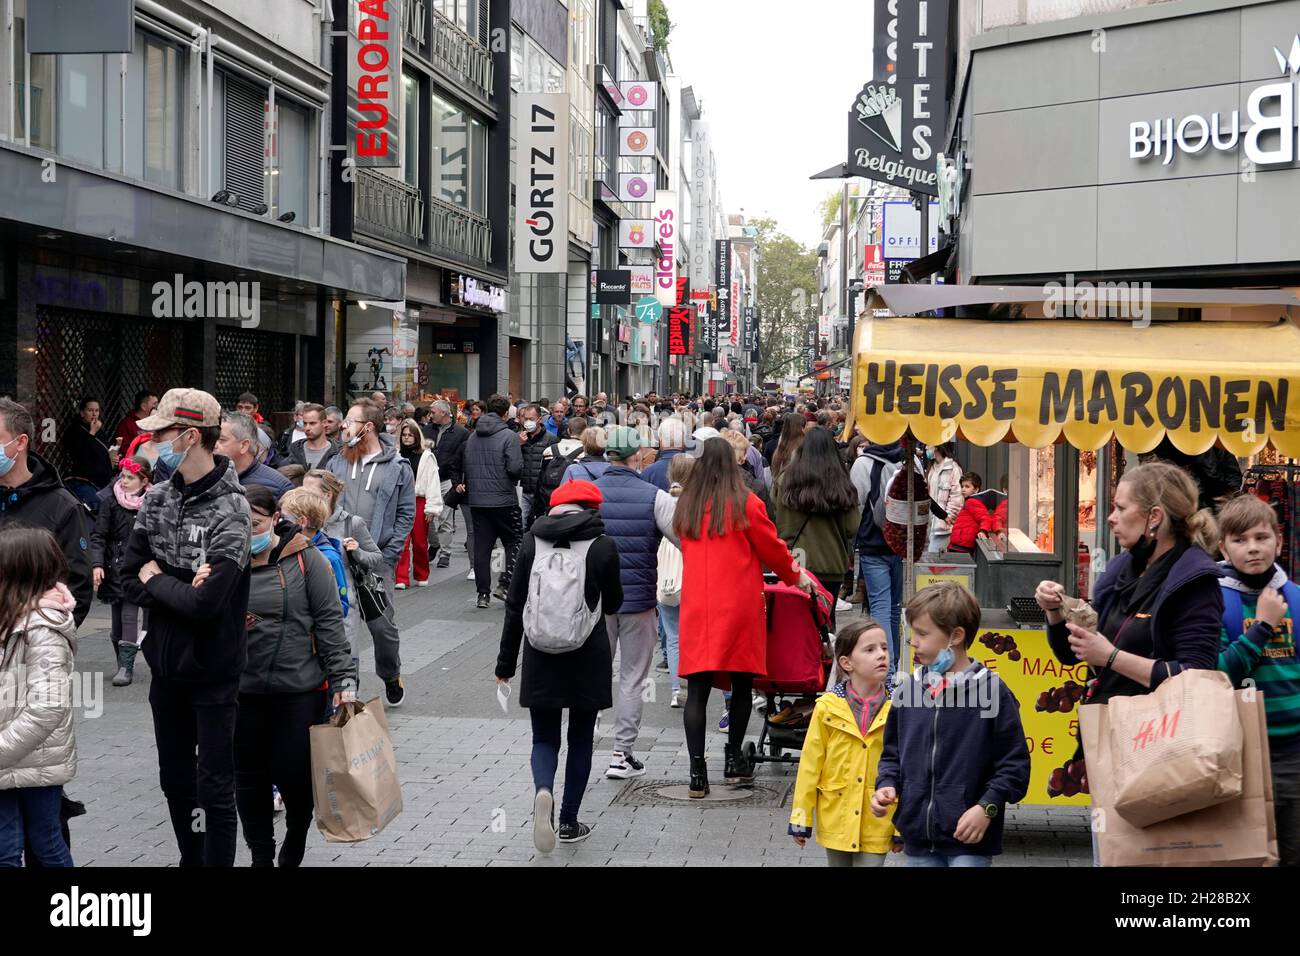 Menschenmassen trotz Corona-Pandemie an einem gewöhnlichen Wochentag in der Hohe Strasse, Köln, Nordrhein-Westfalen,Deutschland Stock Photo